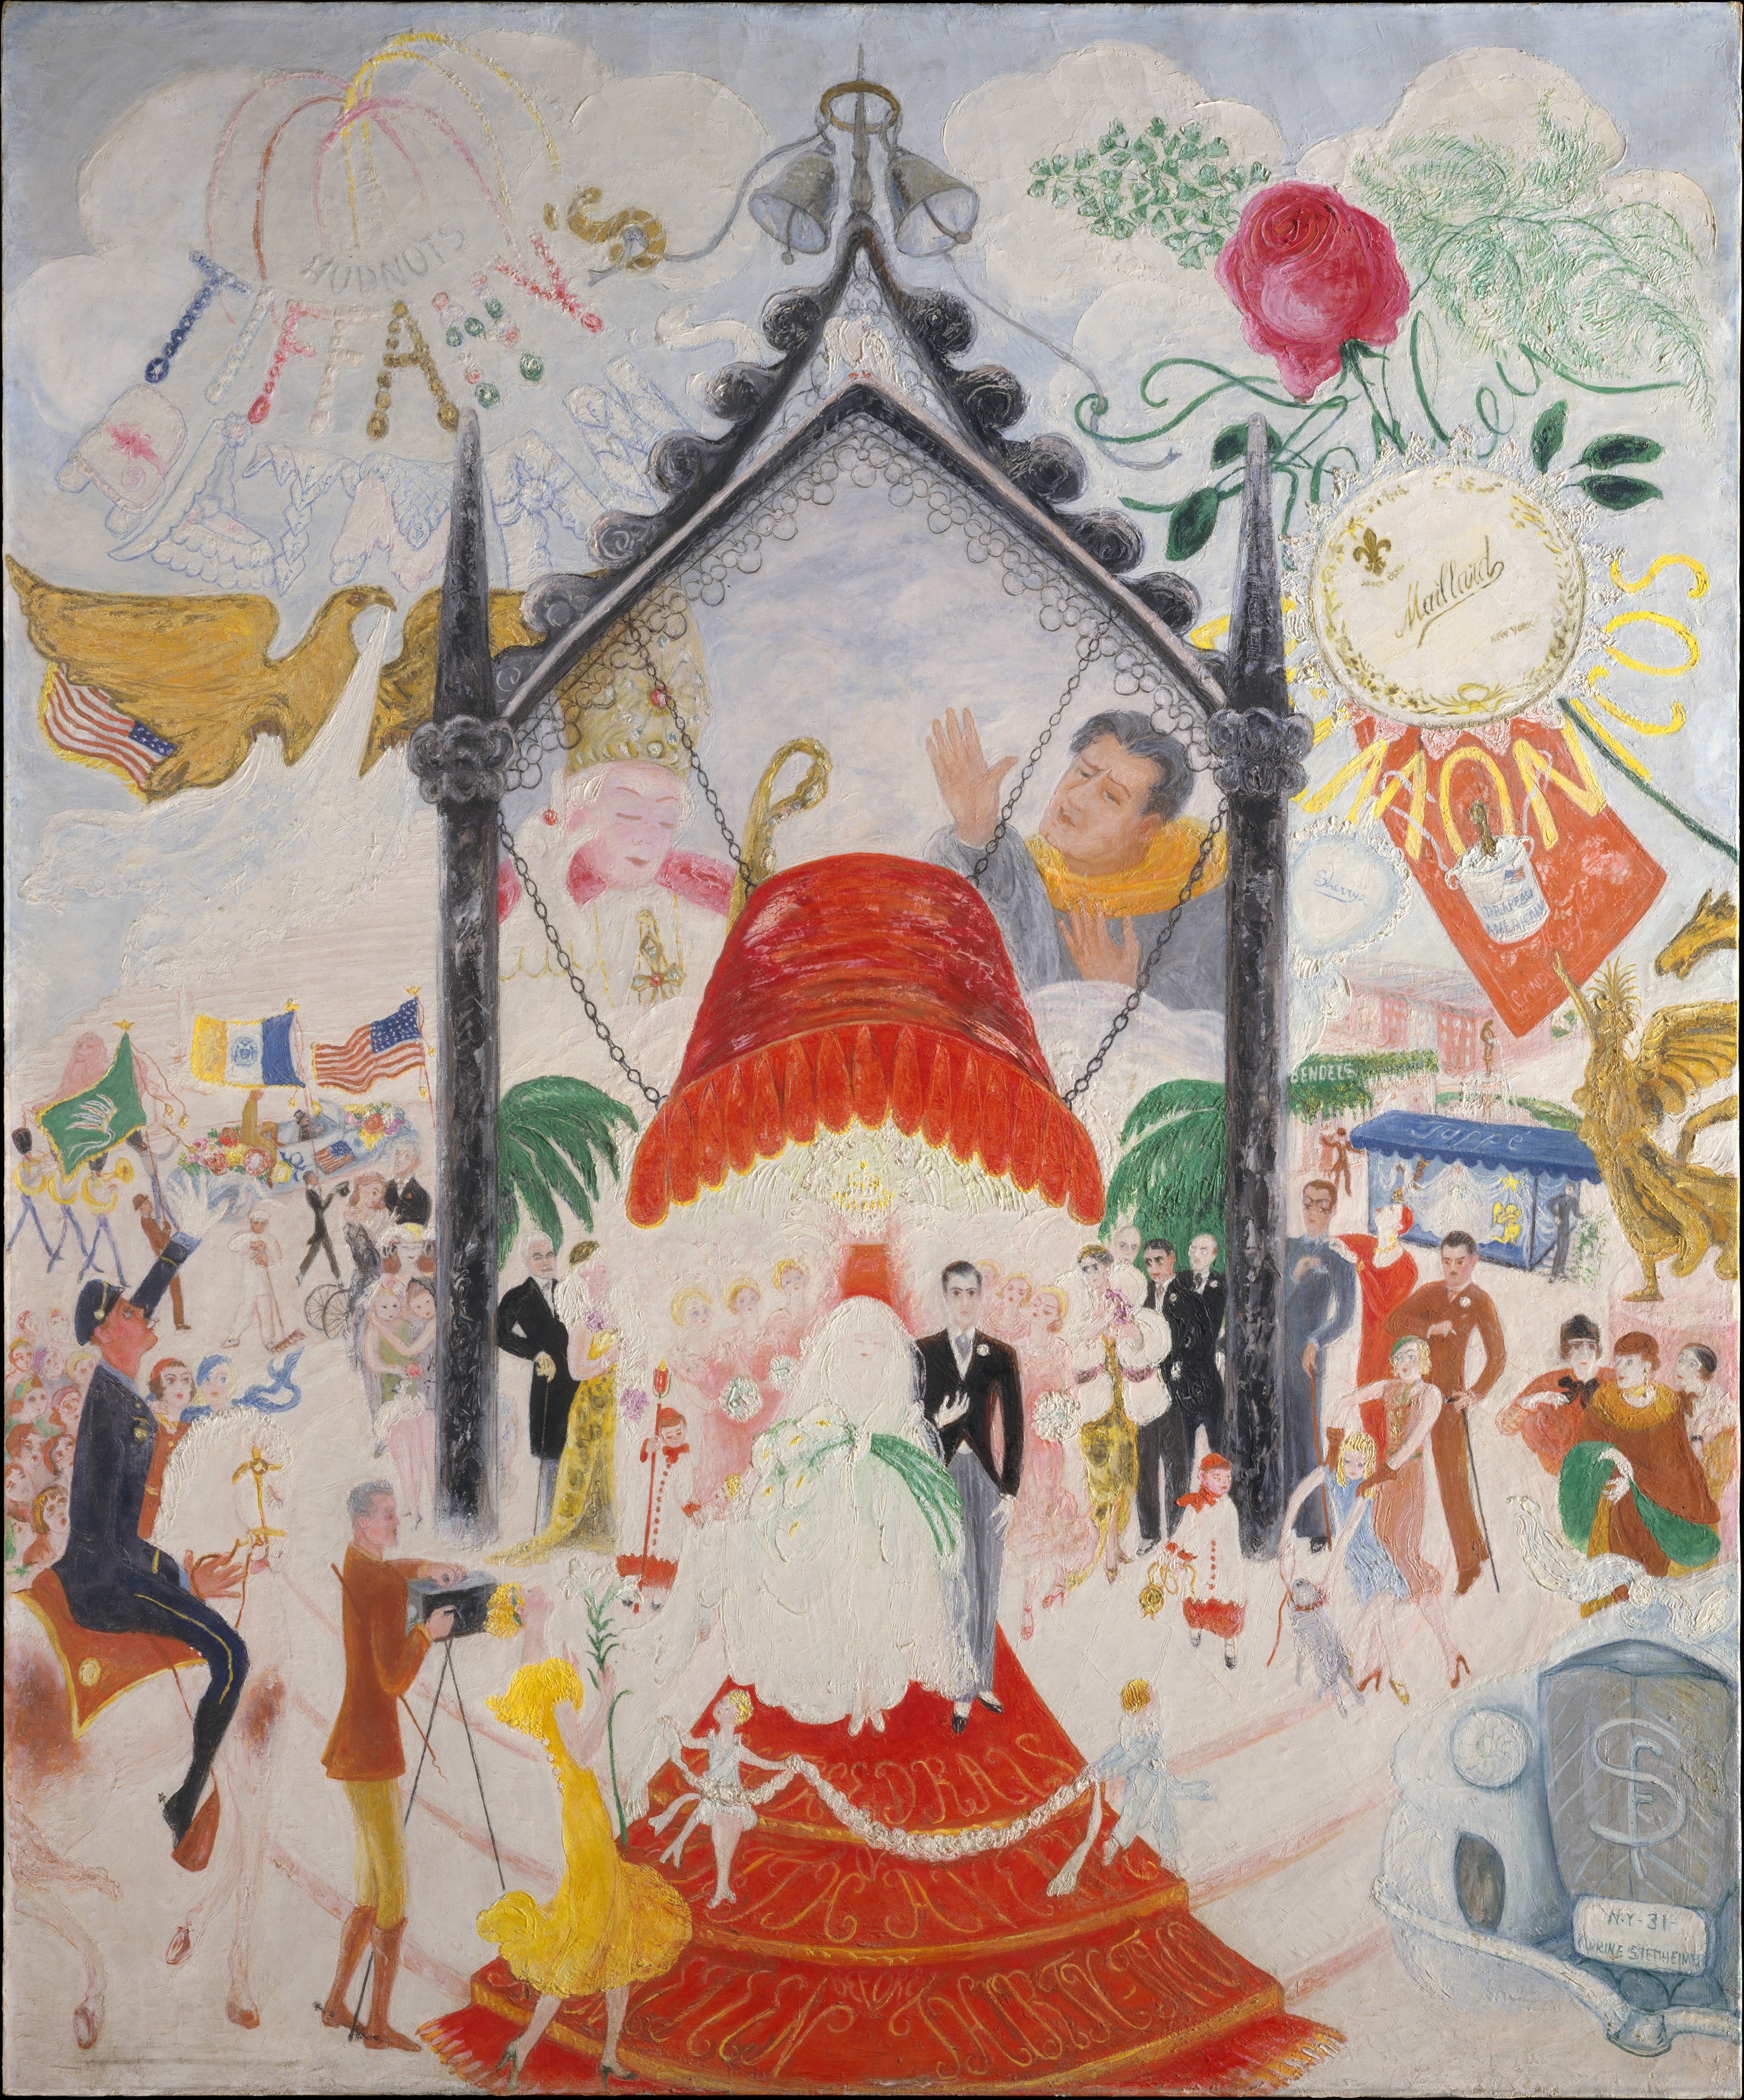 第五大道大教堂 by Florine Stettheimer - 1931 - 152.4 x 127 cm 